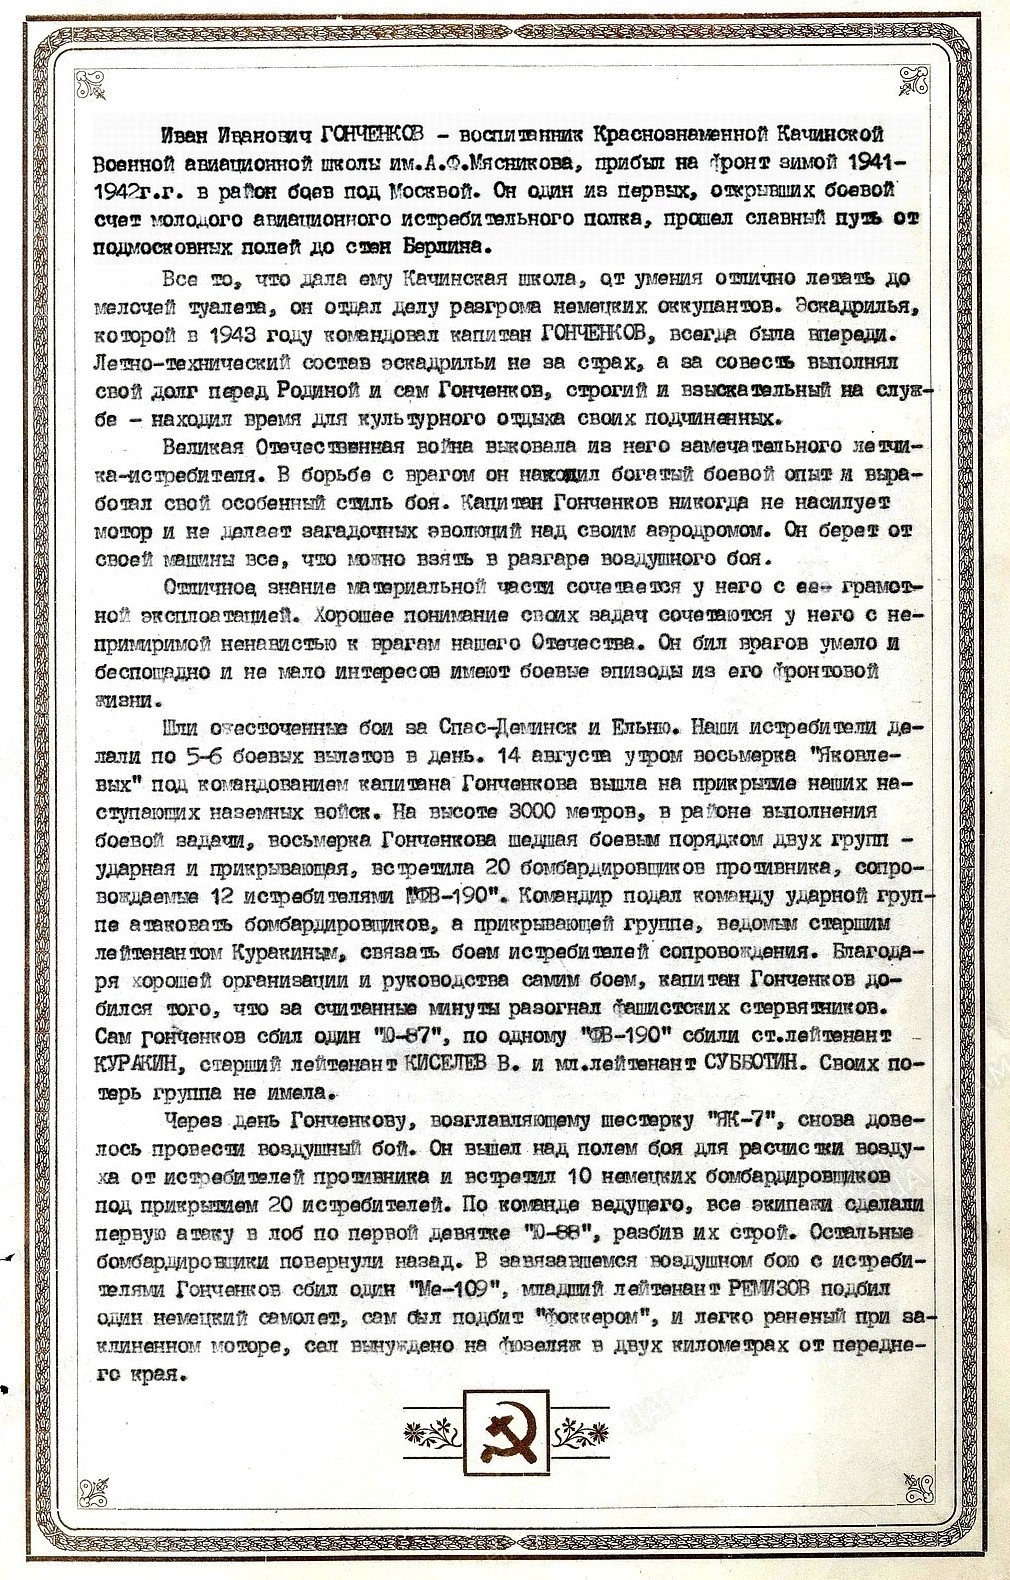 Из материалов военных лет о И. И. Гонченкове